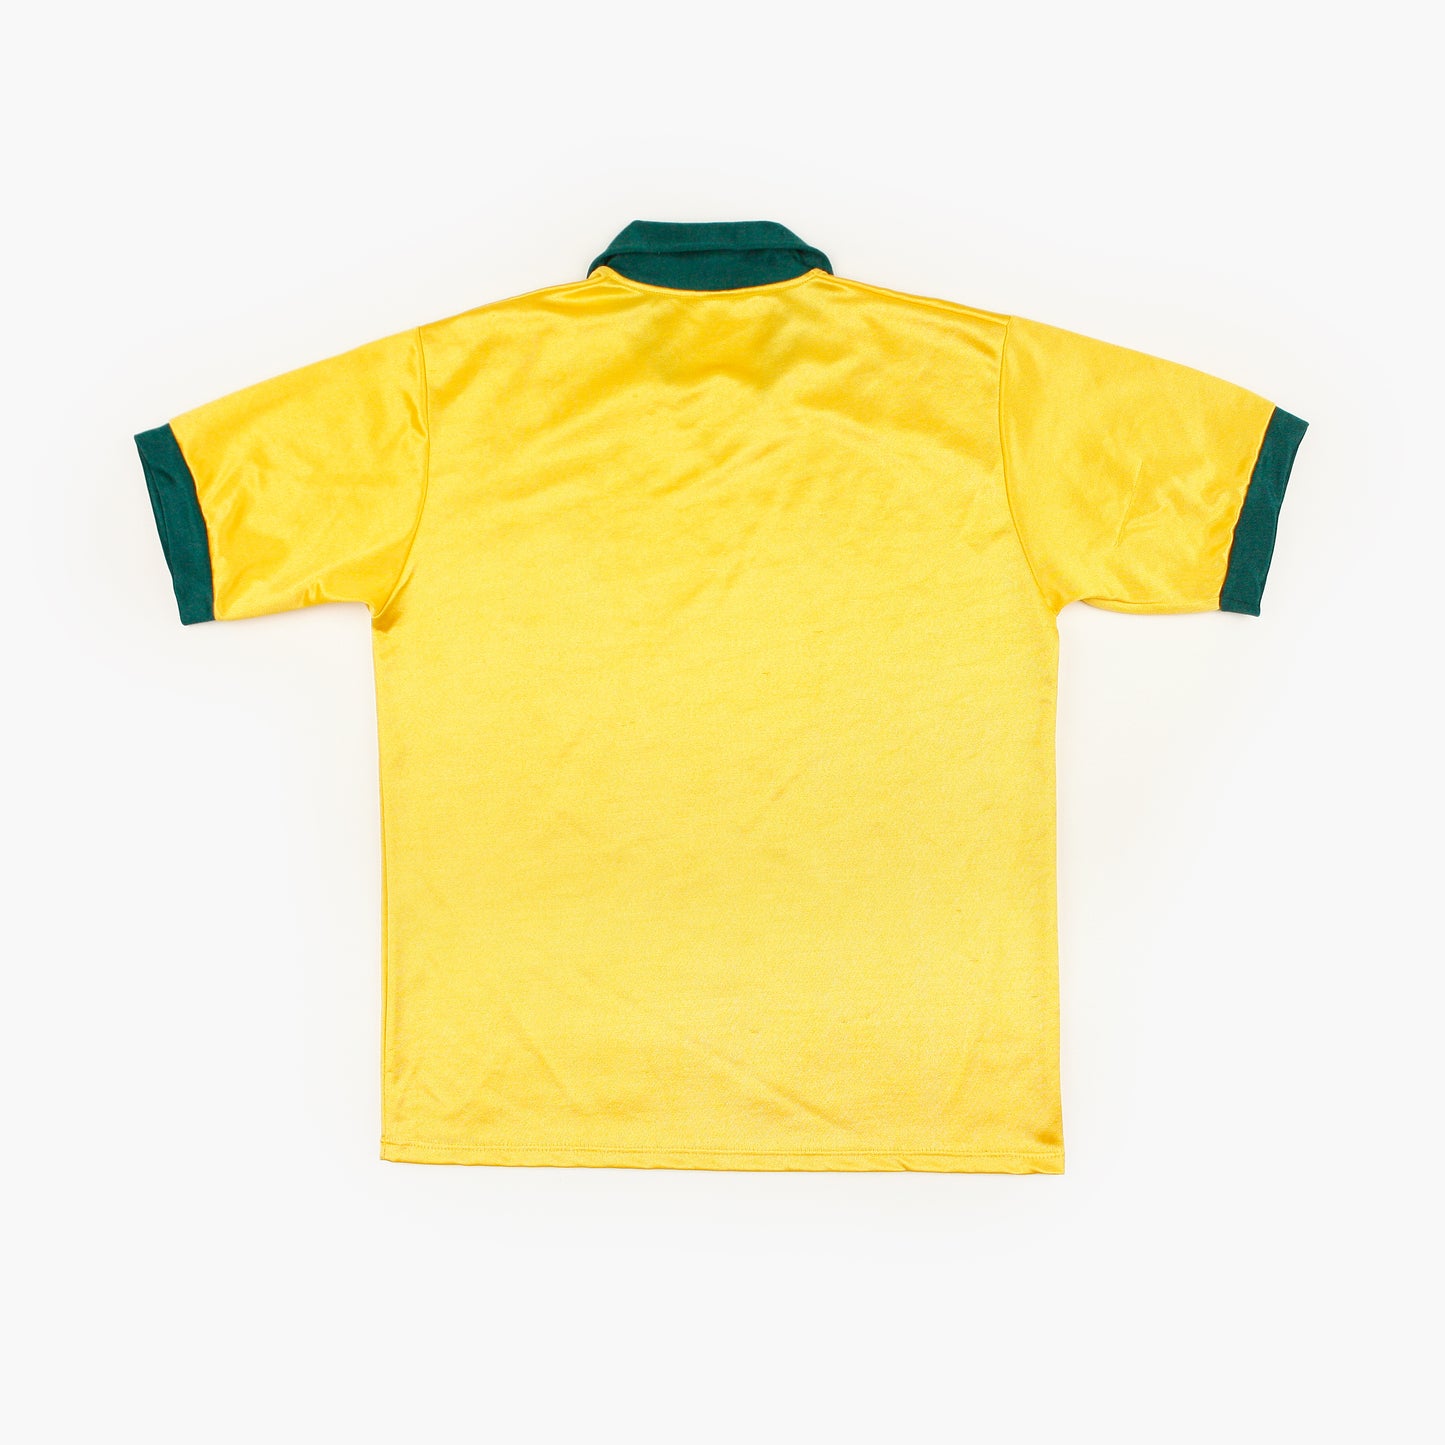 Brasil 88/91 • Camiseta Local • L (M)